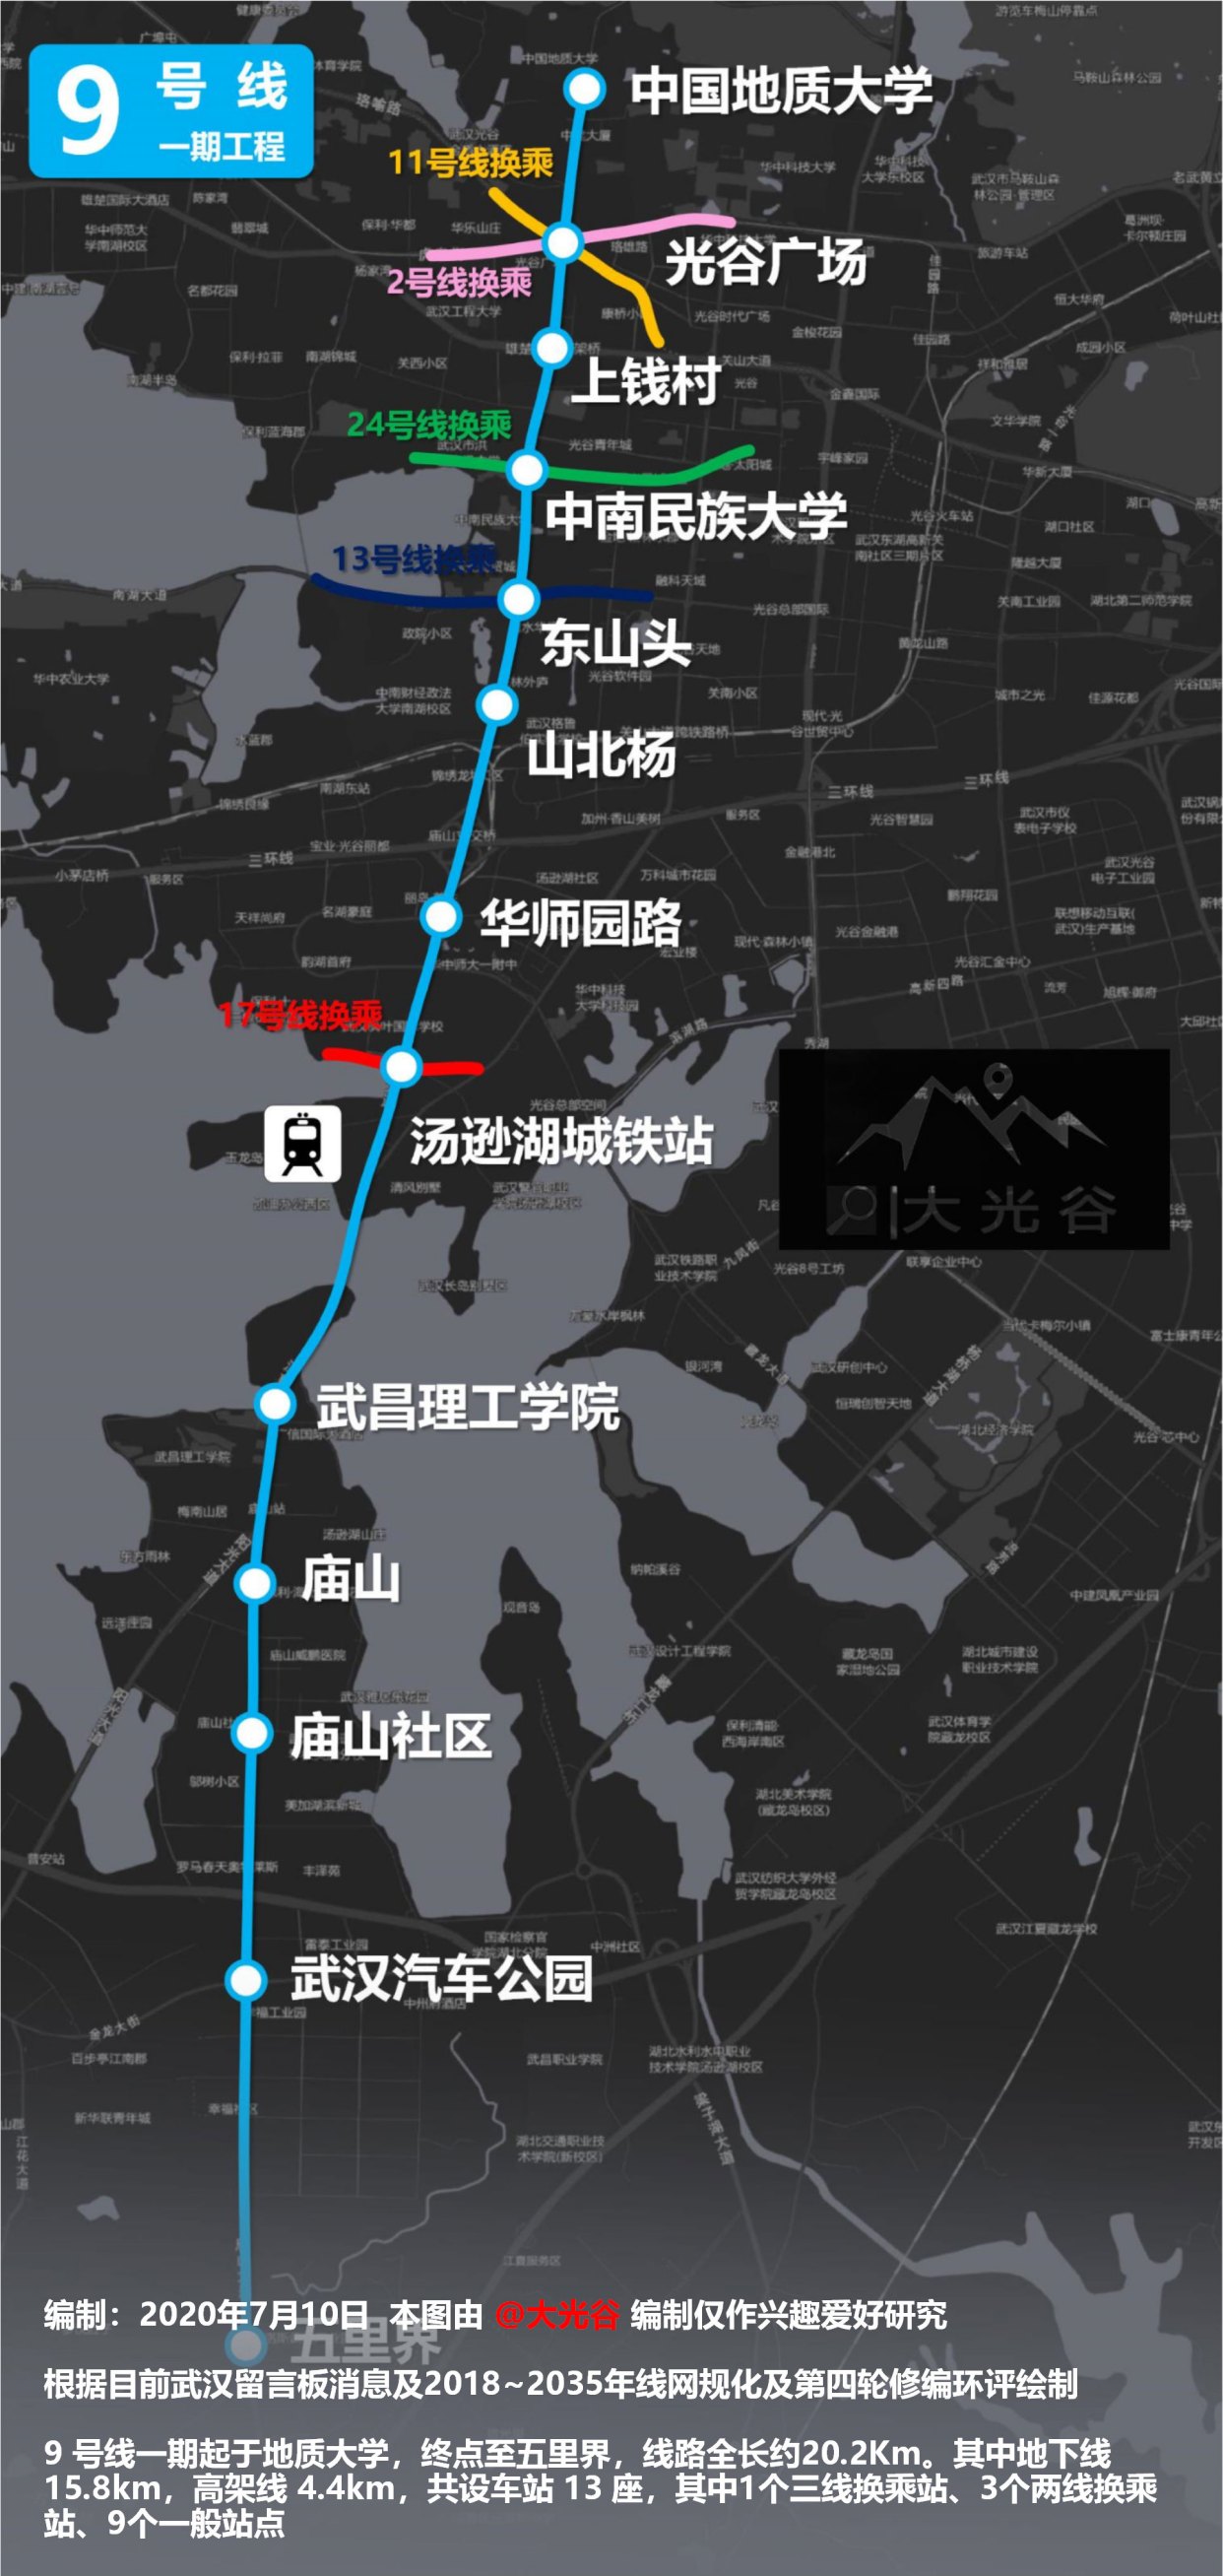 备受关注的武汉地铁9号线一期项目迎来了小进展